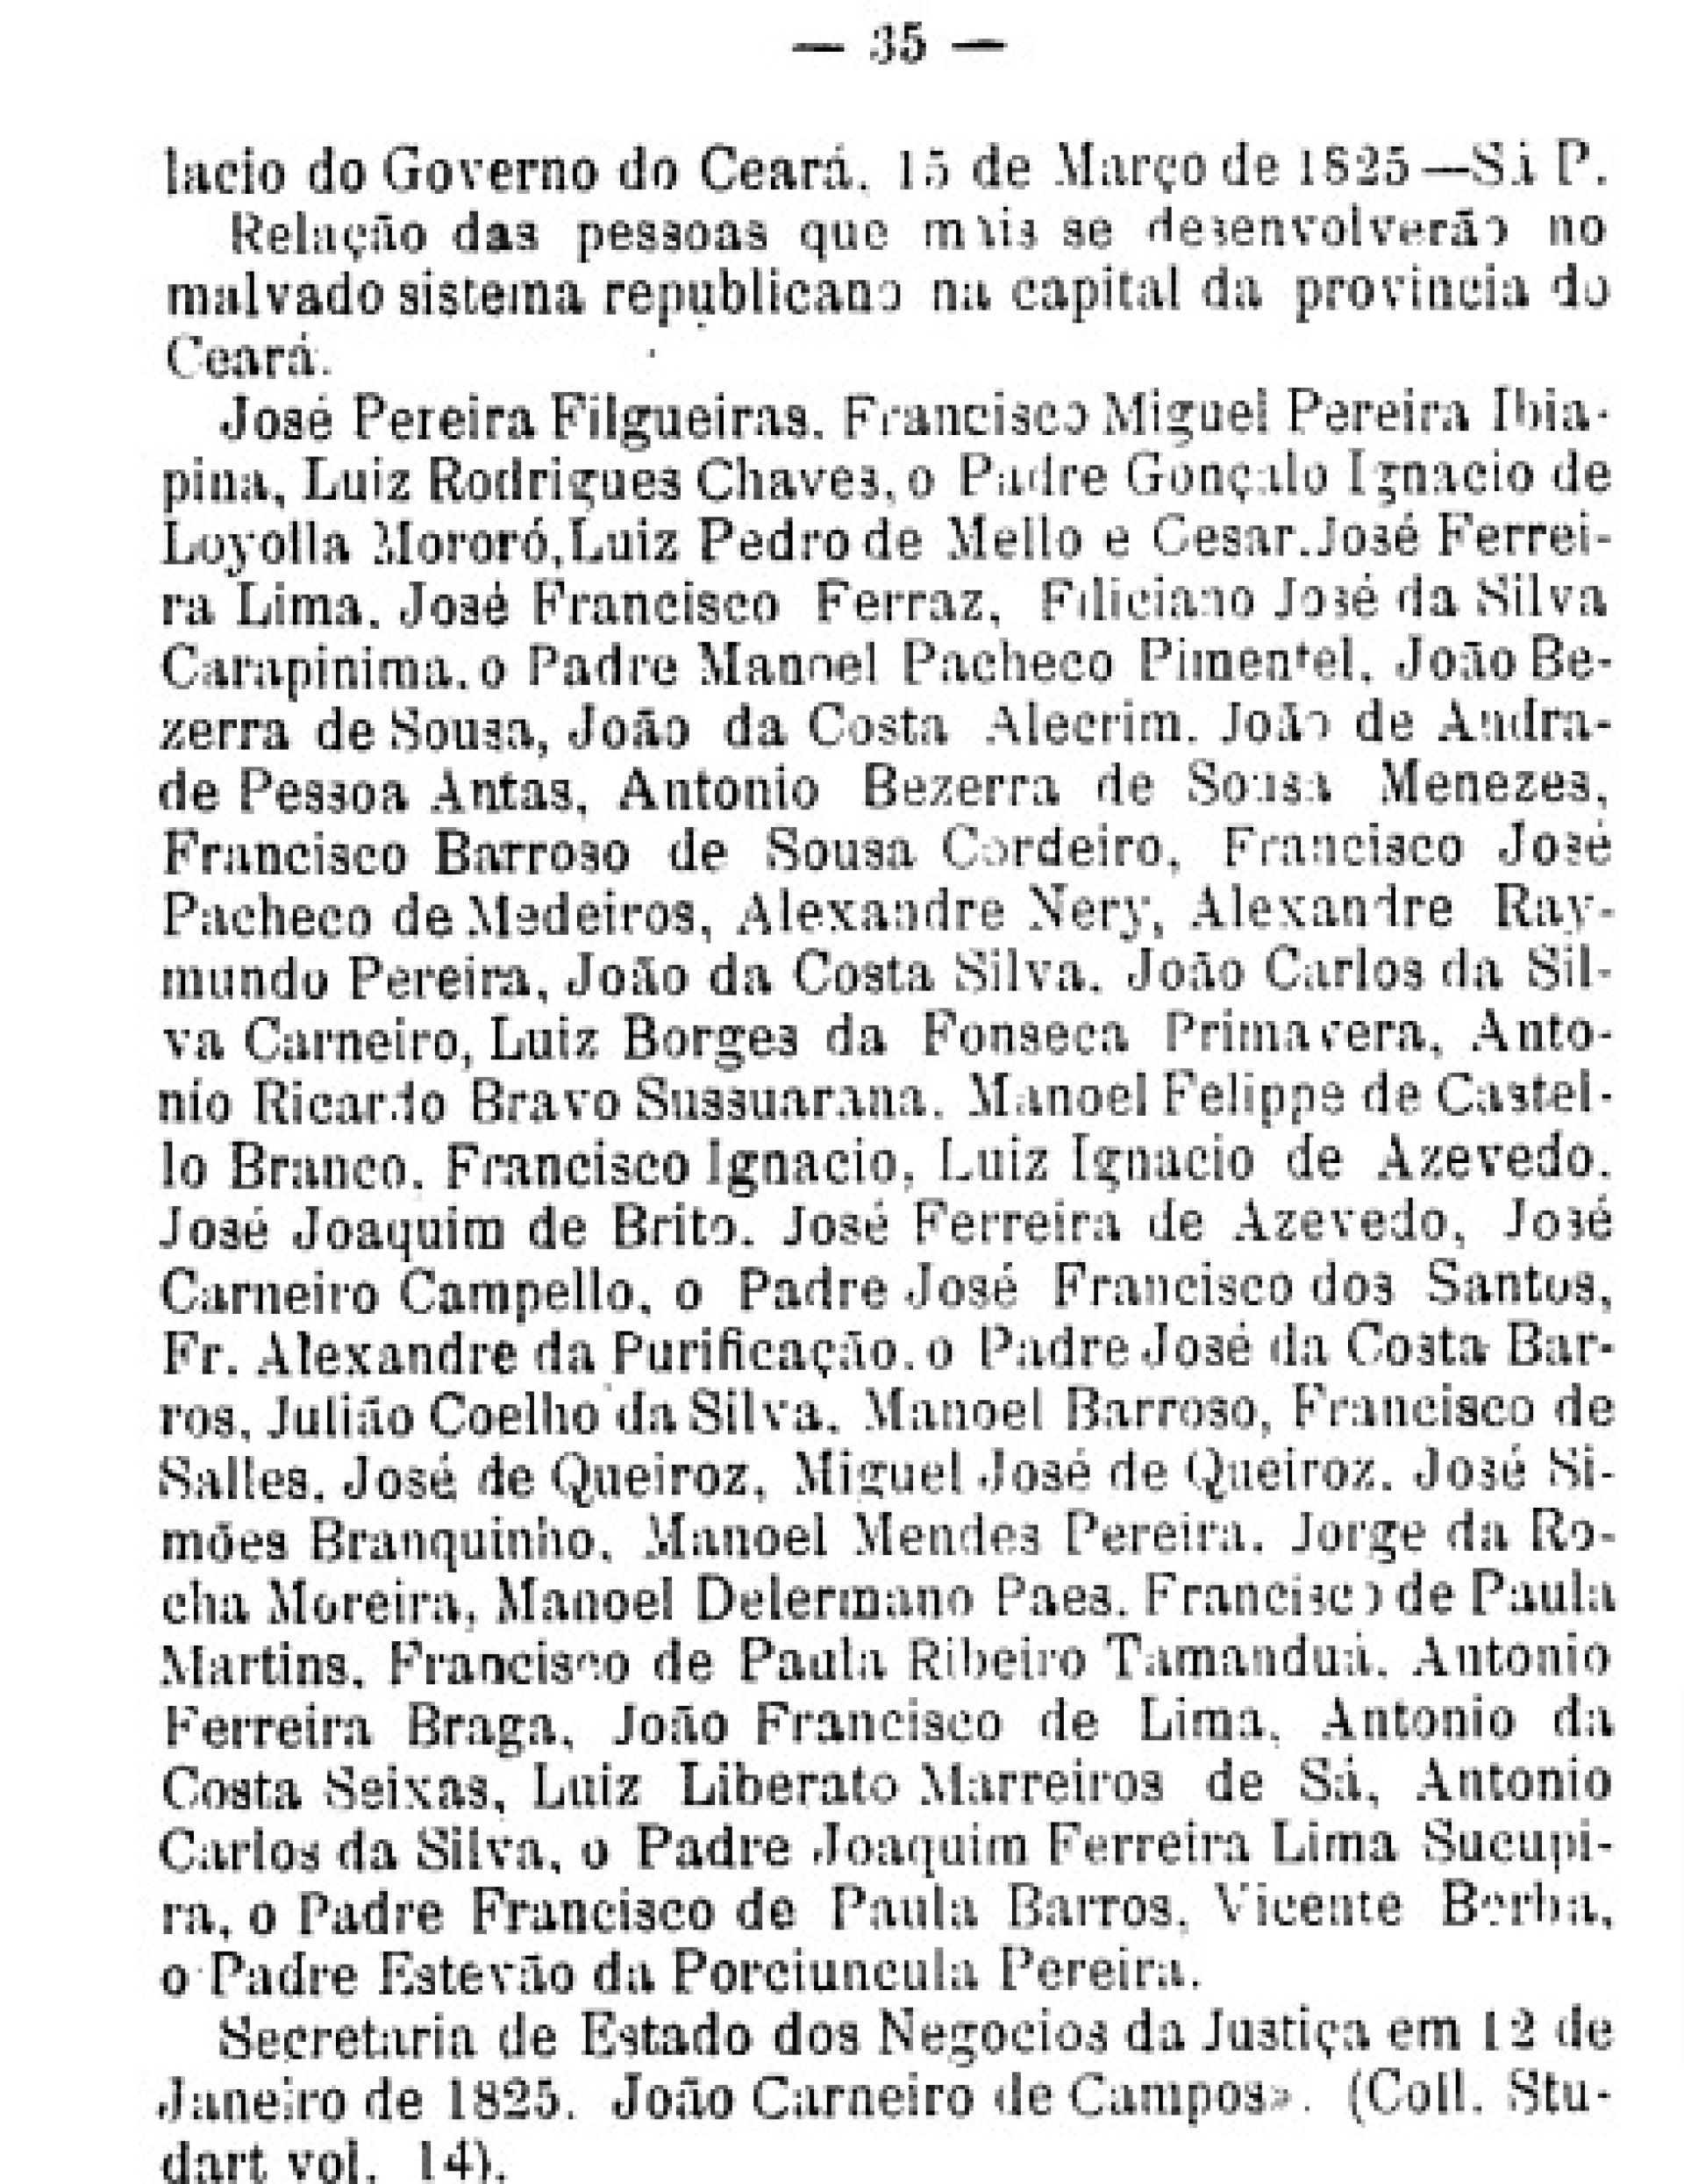 Lista dos nomes de quem mais participou da Confederação do Equador no Ceará(Foto: Reprodução/Domo II de Datas e fatos para a História do Ceará)